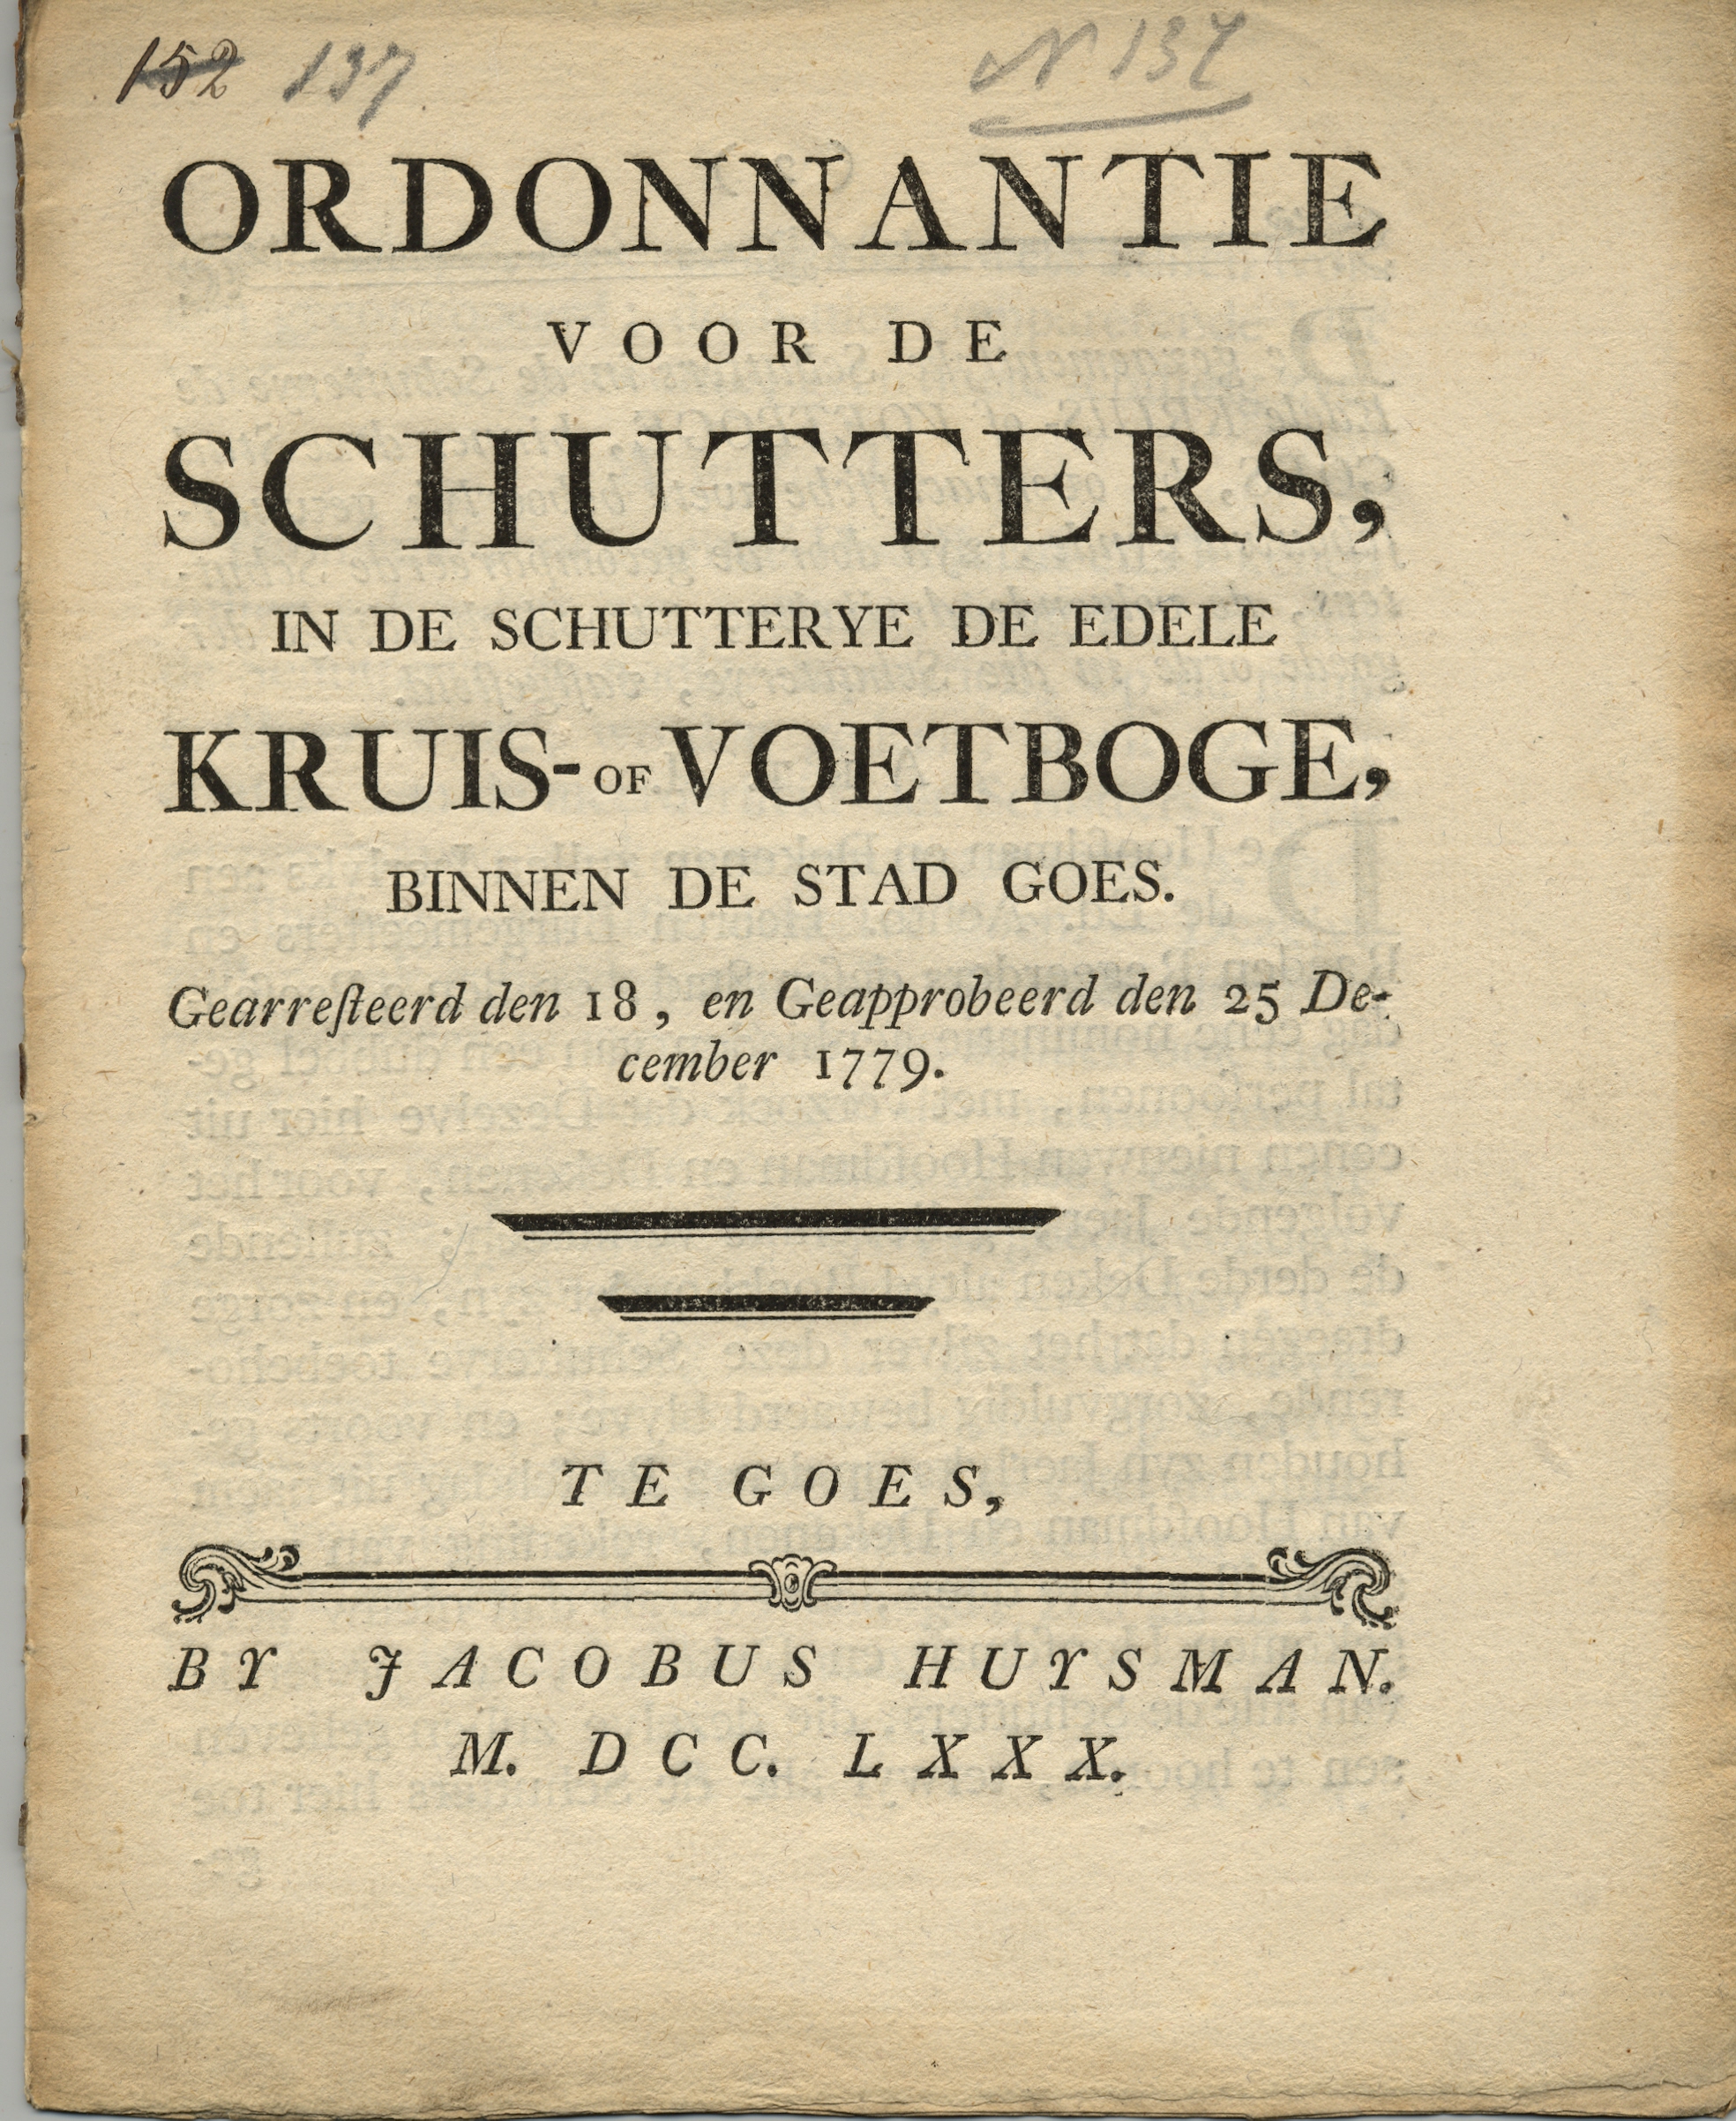 Ordonnantie voor de voetboogschutters, 1779.